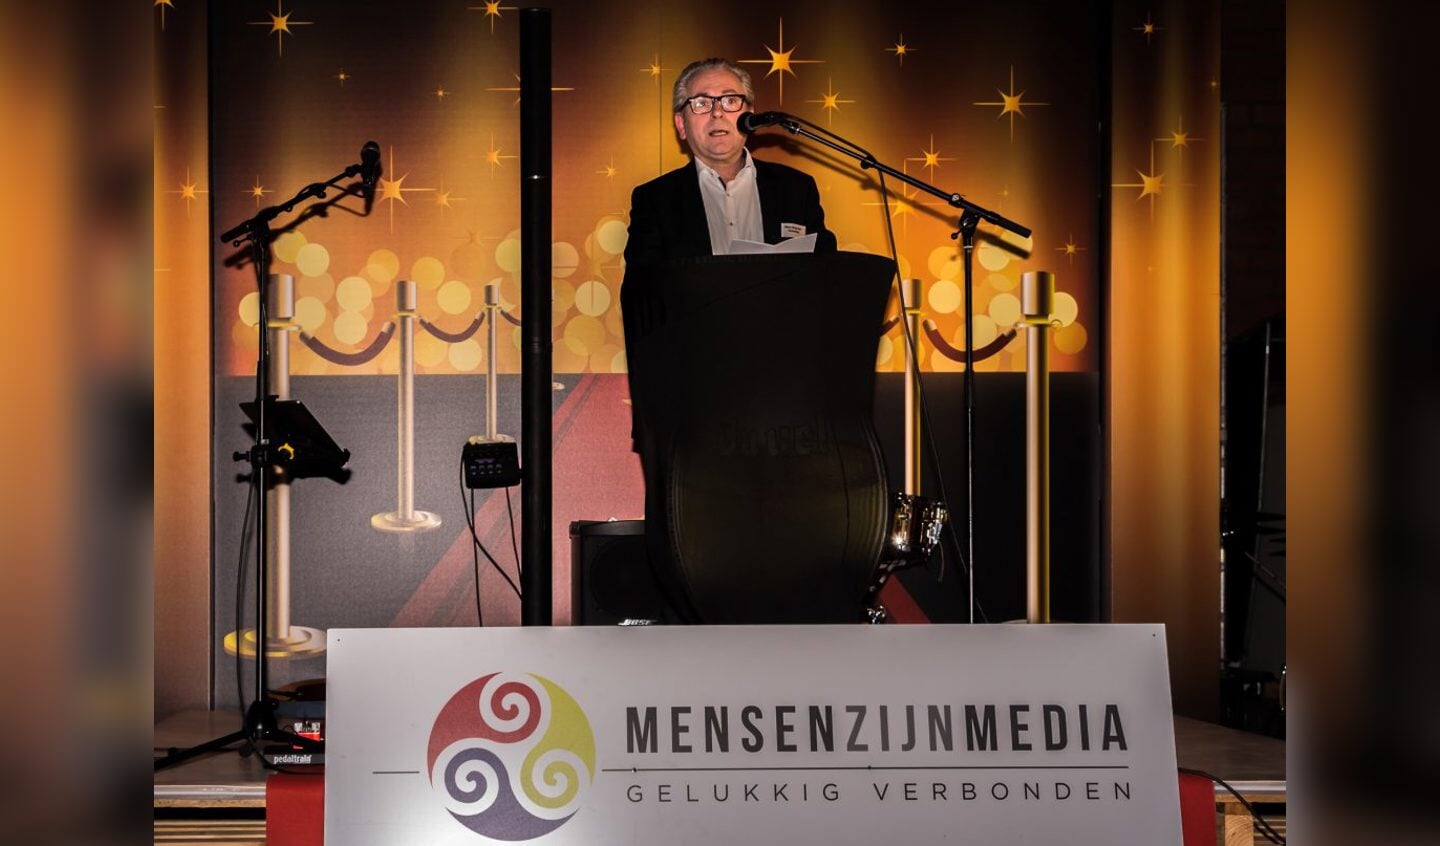 Unizo Mortsel-voorzitter Marc Drexeler verwelkomt de genodigden